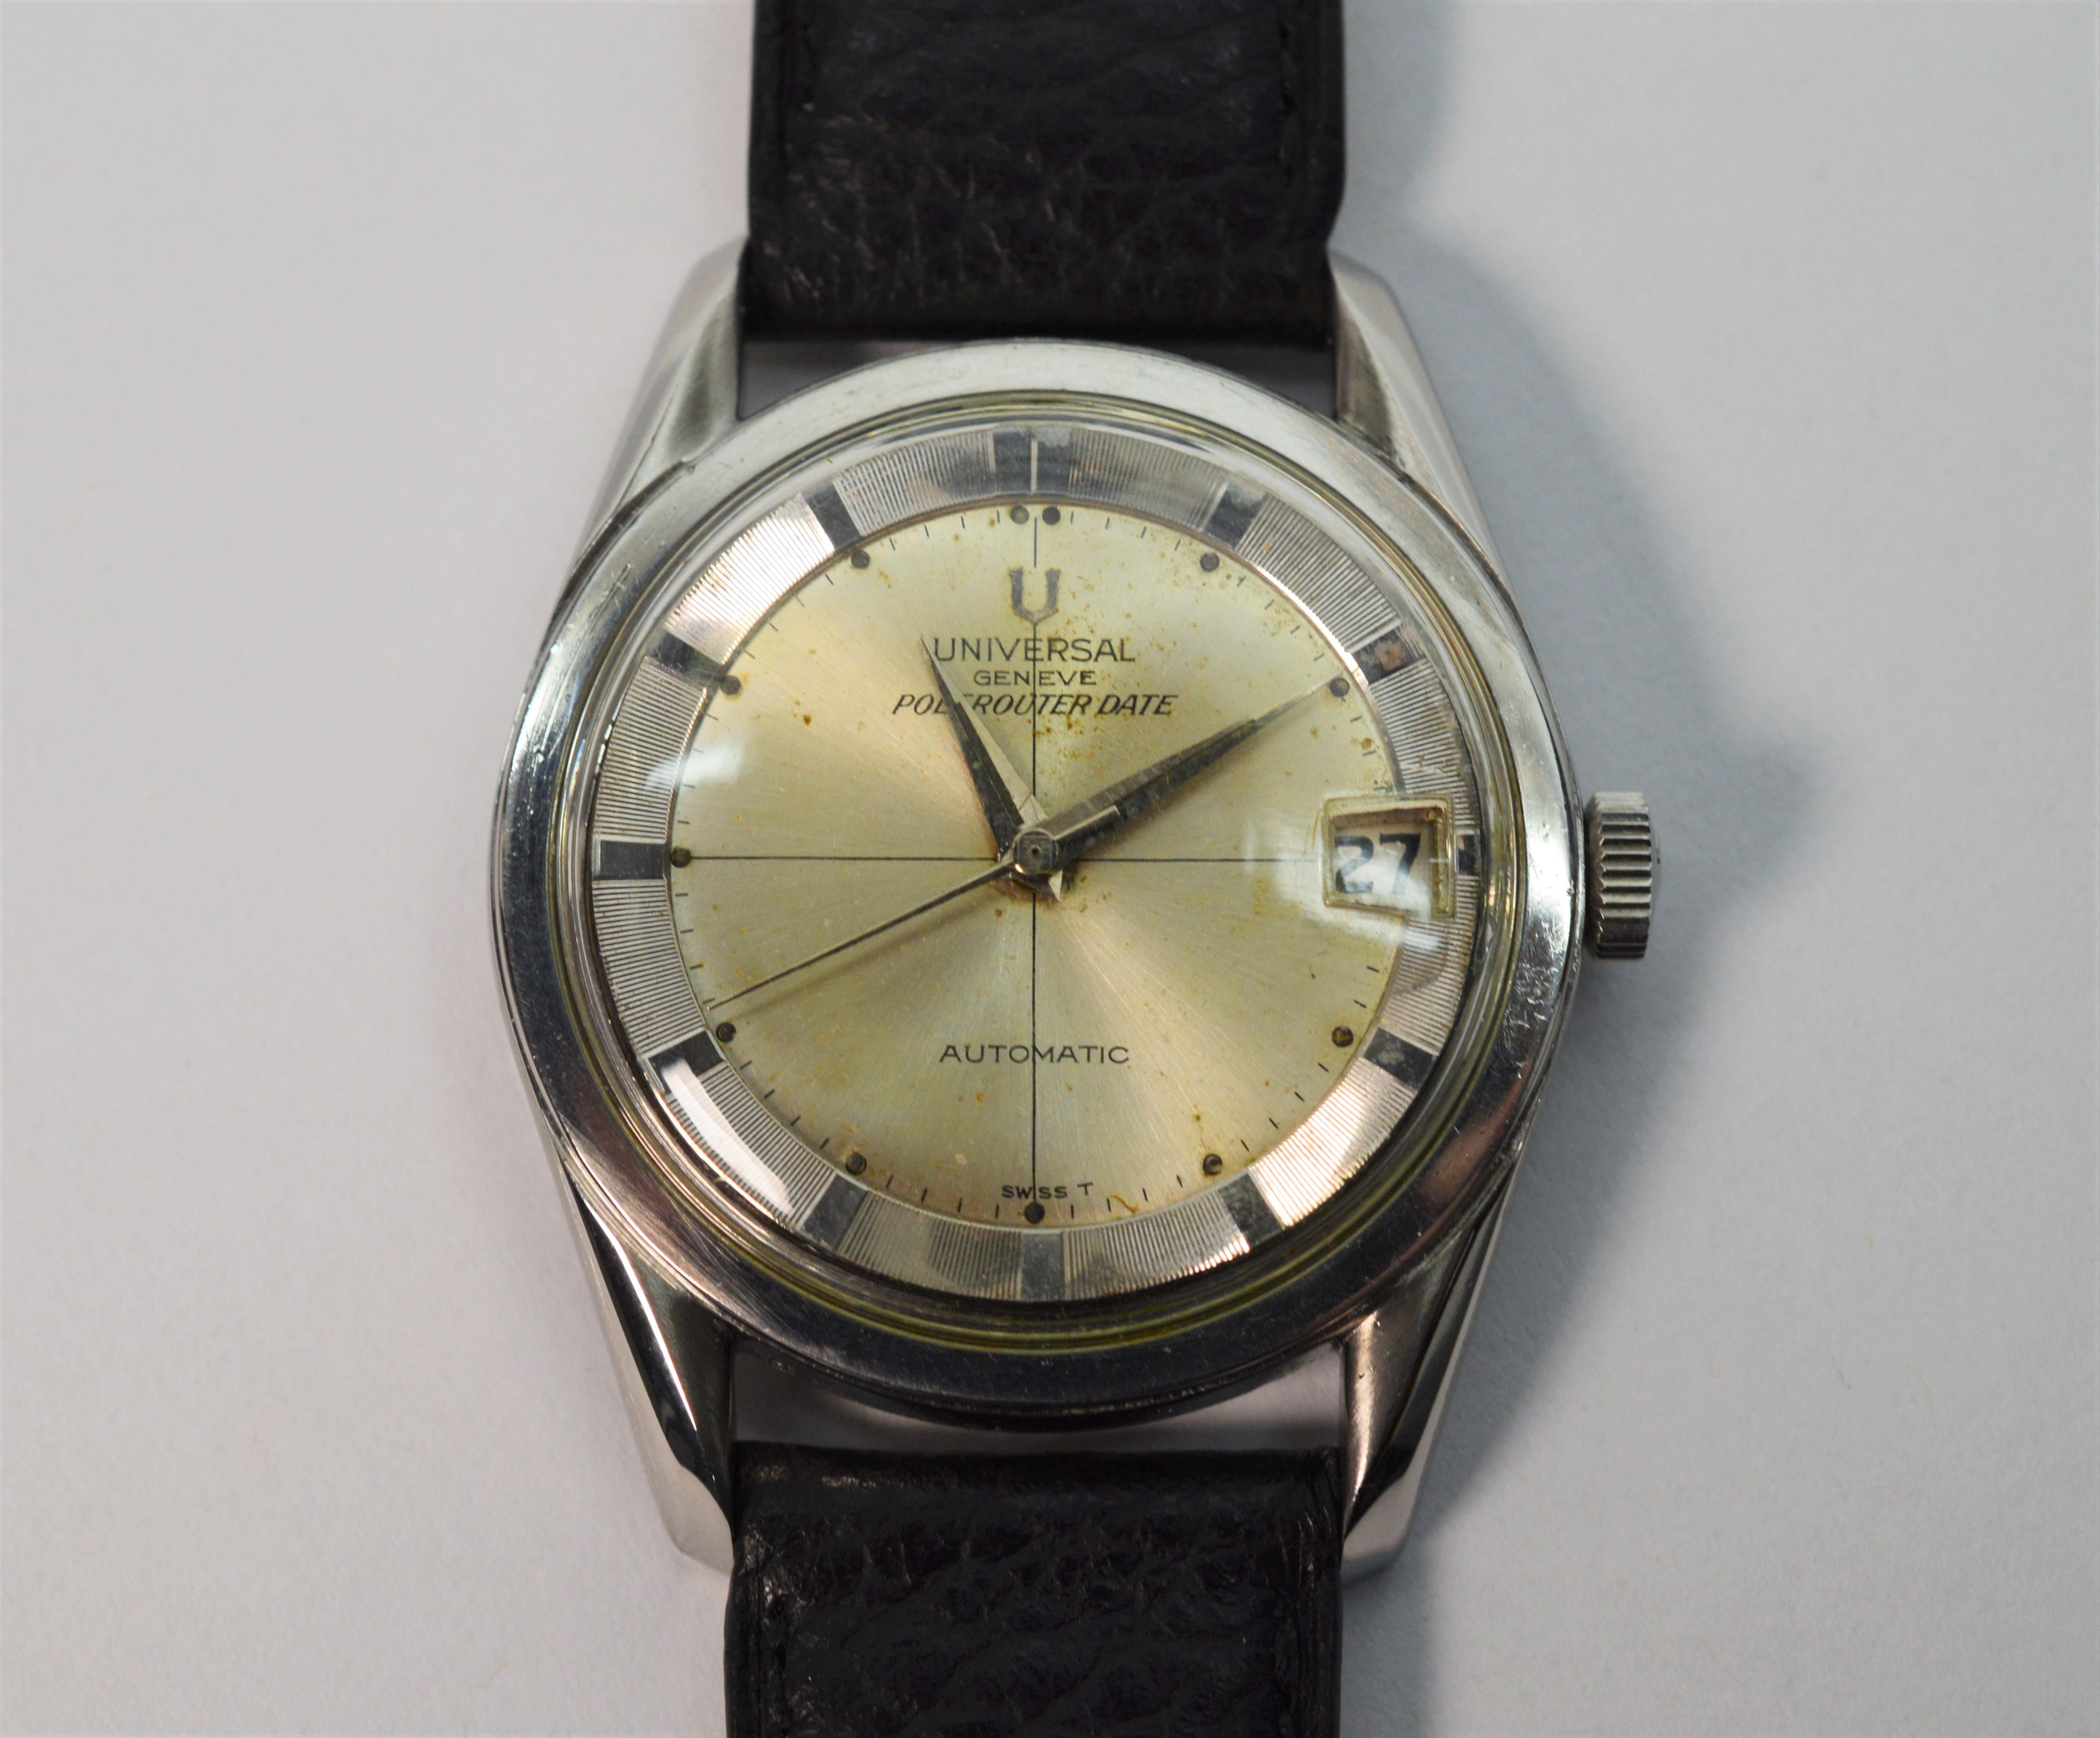 Iconique, originale et intacte, cette montre-bracelet automatique Universal Geneve 218-2 Polerouter date 35 mm en acier pour hommes sera reconnue par les collectionneurs de montres passionnés. Conçue par le légendaire groupe
Gerald Genta, célèbre